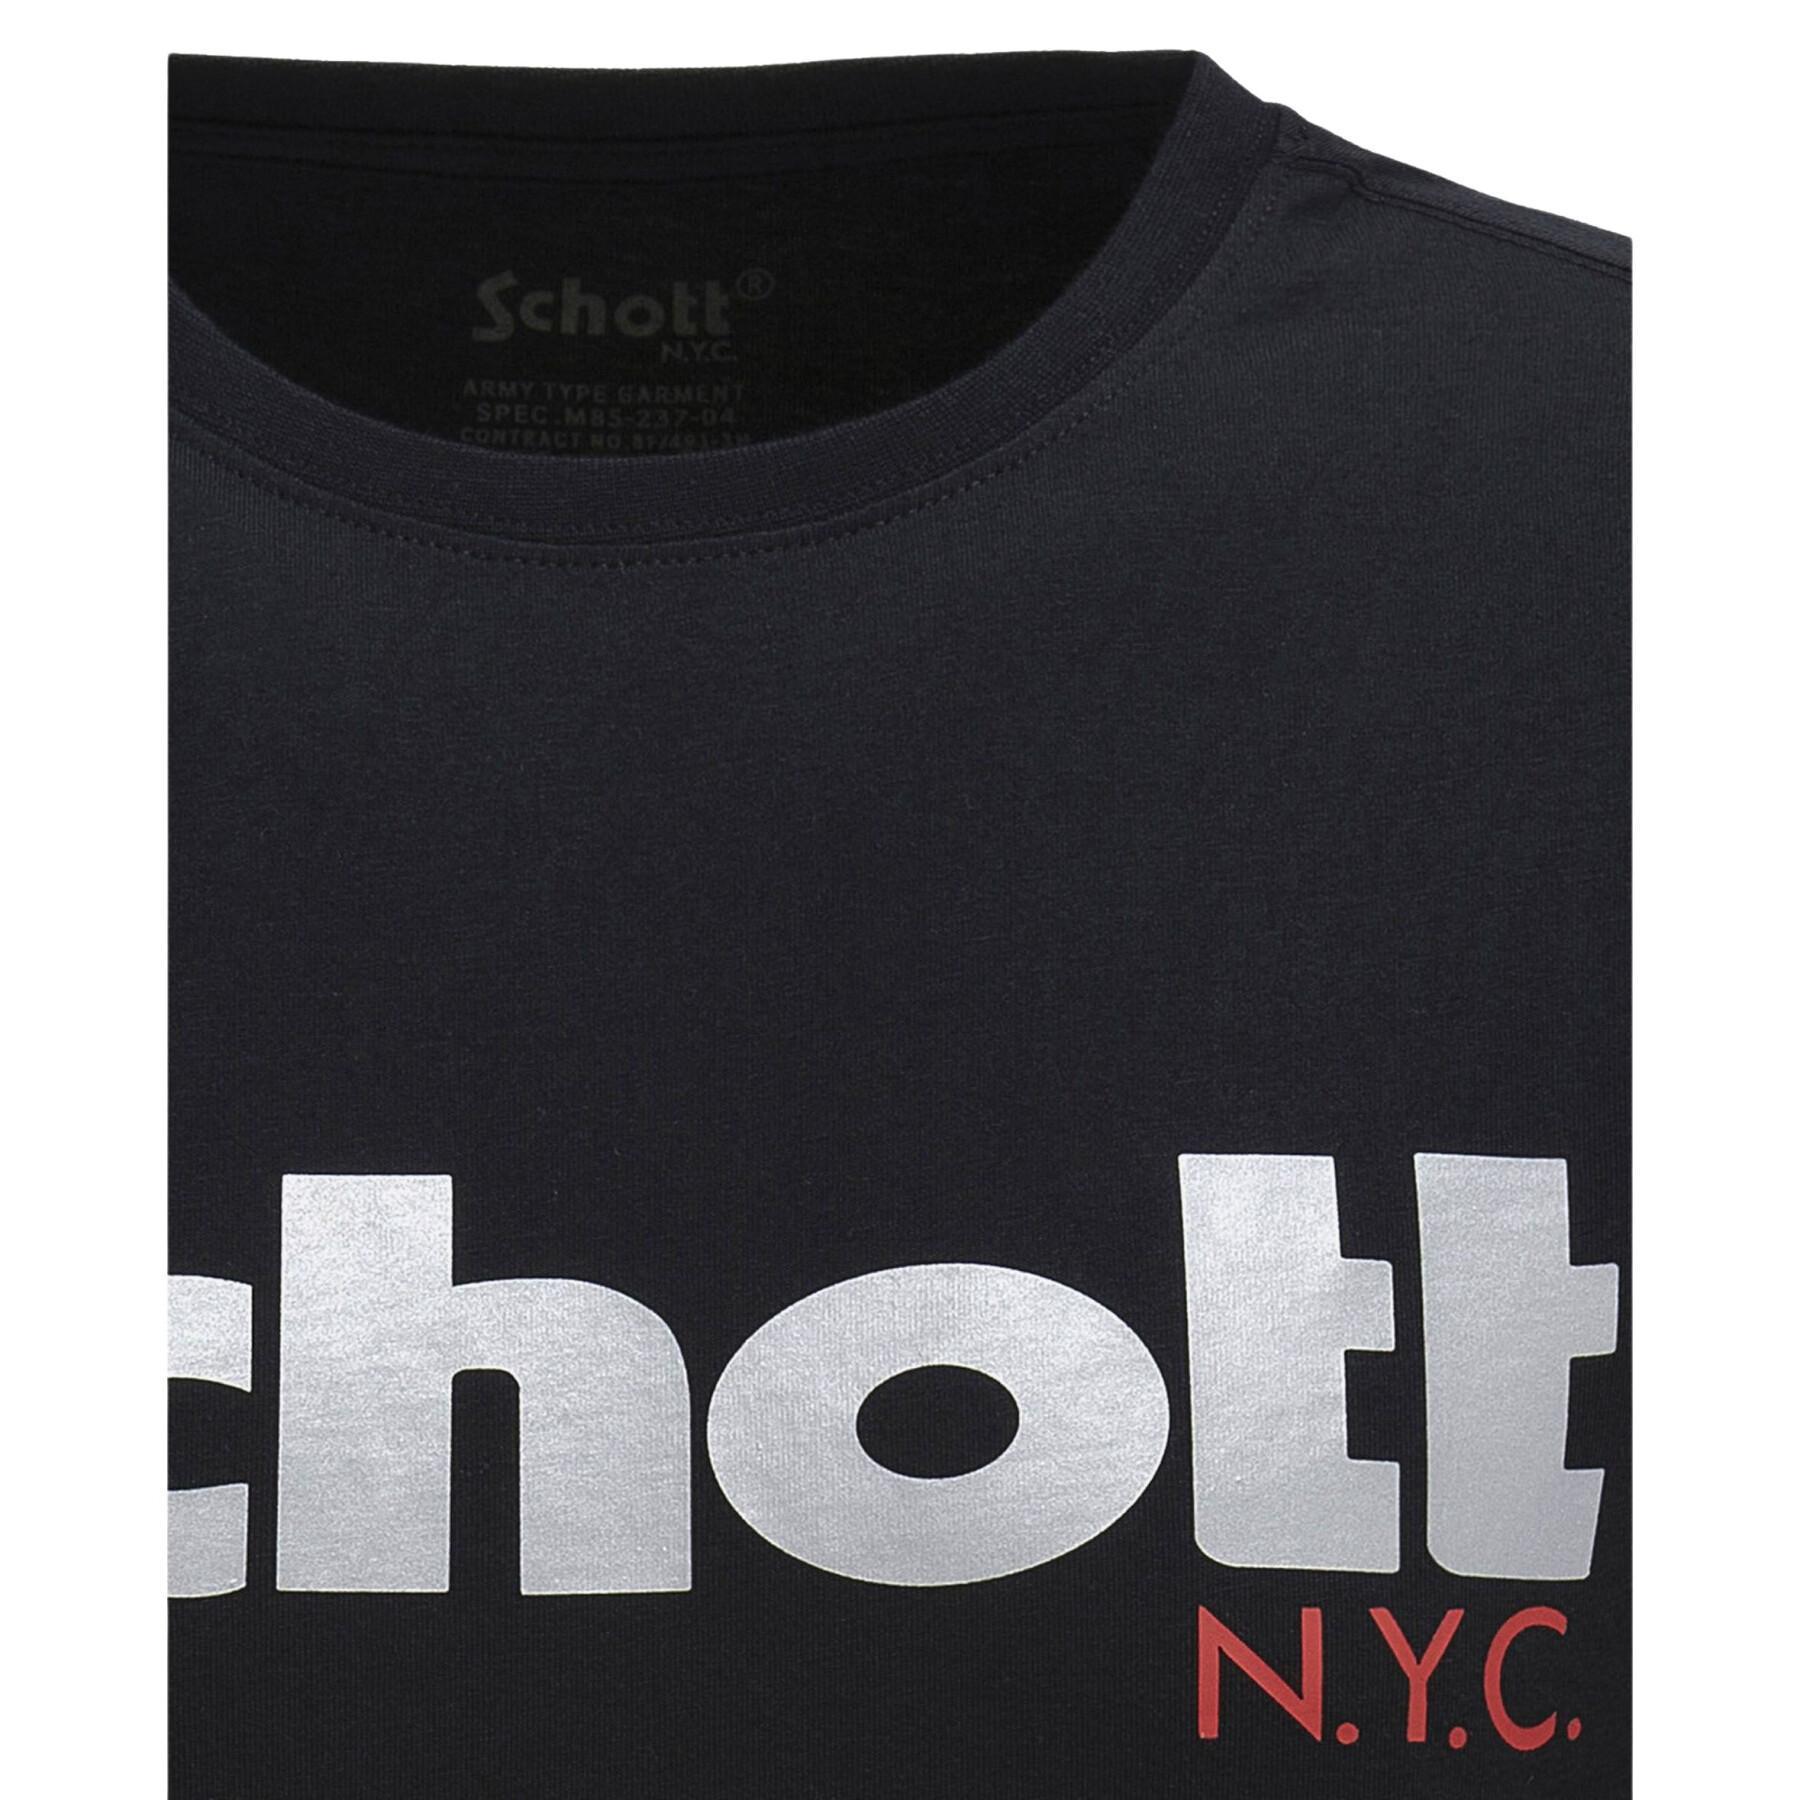 Maglietta a manica corta con grande logo Schott